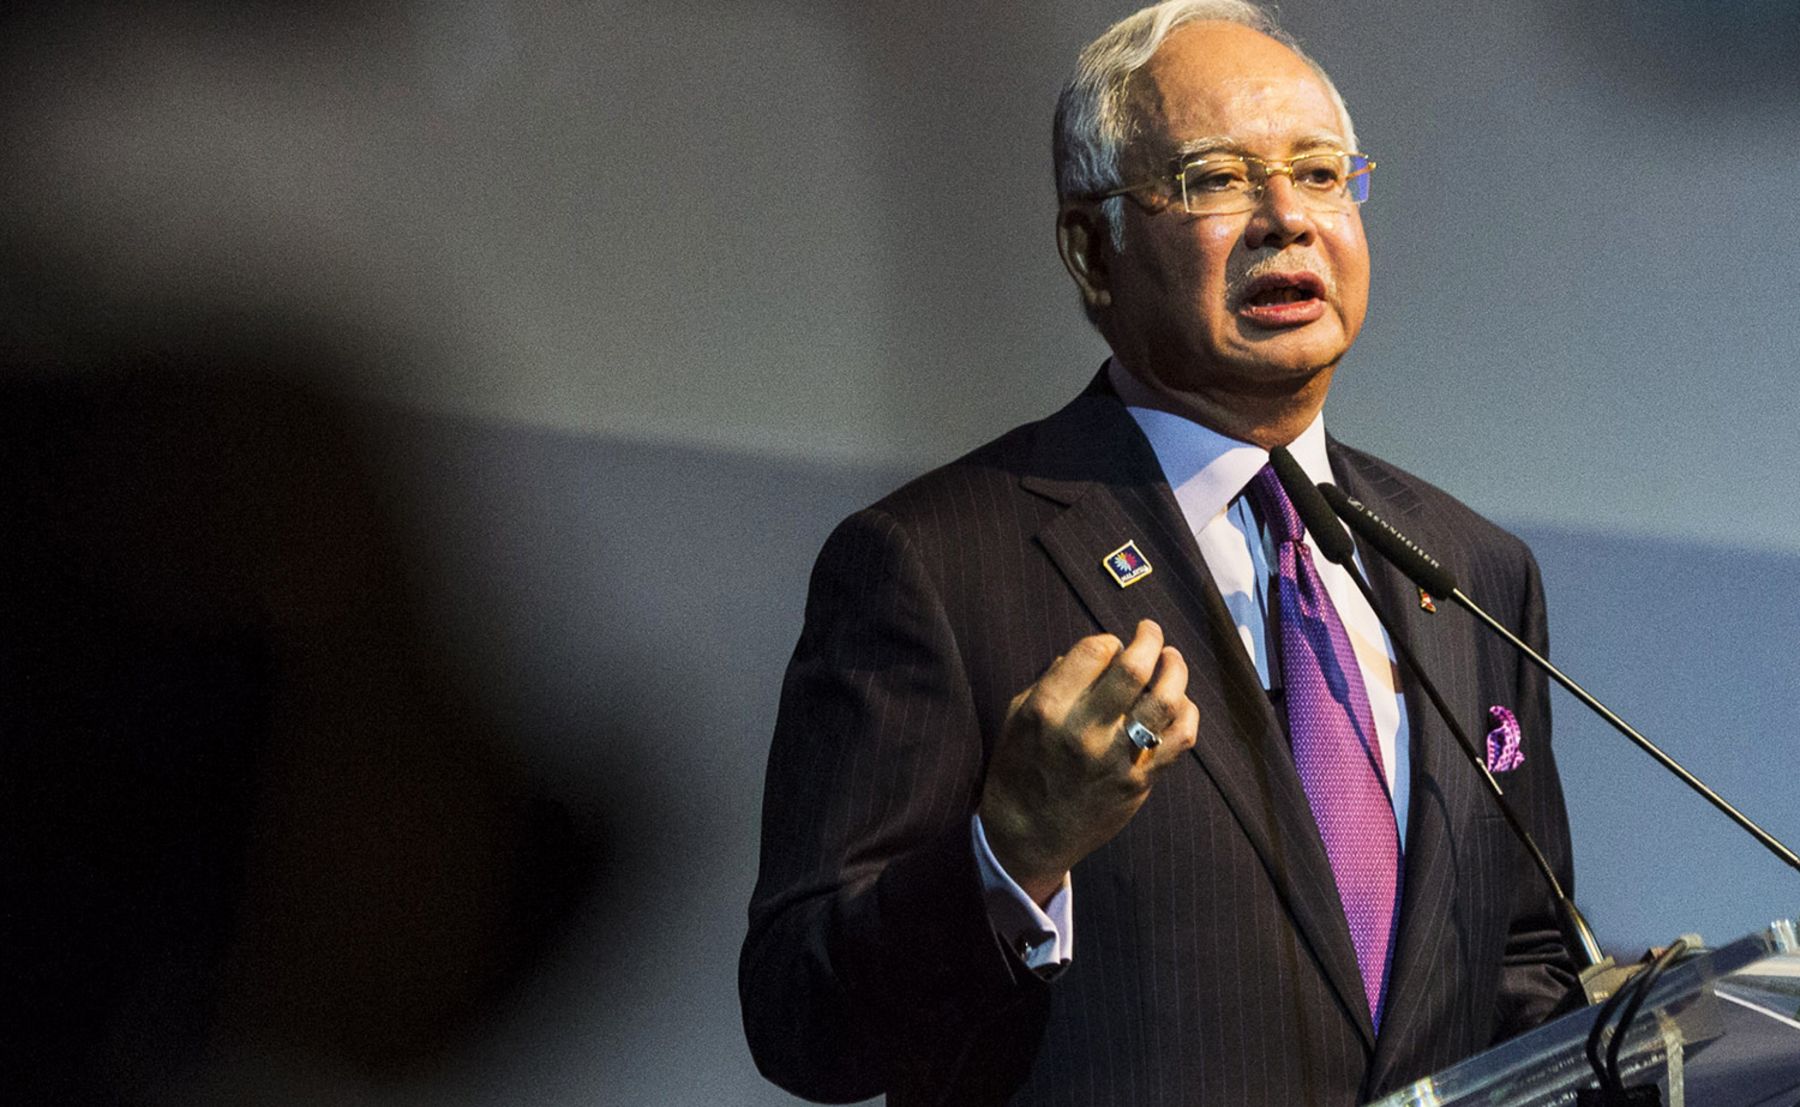 Najib เริ่มนโยบายประชานิยม 'แจกเงิน-ลดภาษี' ก่อนเลือกตั้งปีหน้า หวังกลบข่าวฉาว 1MDB